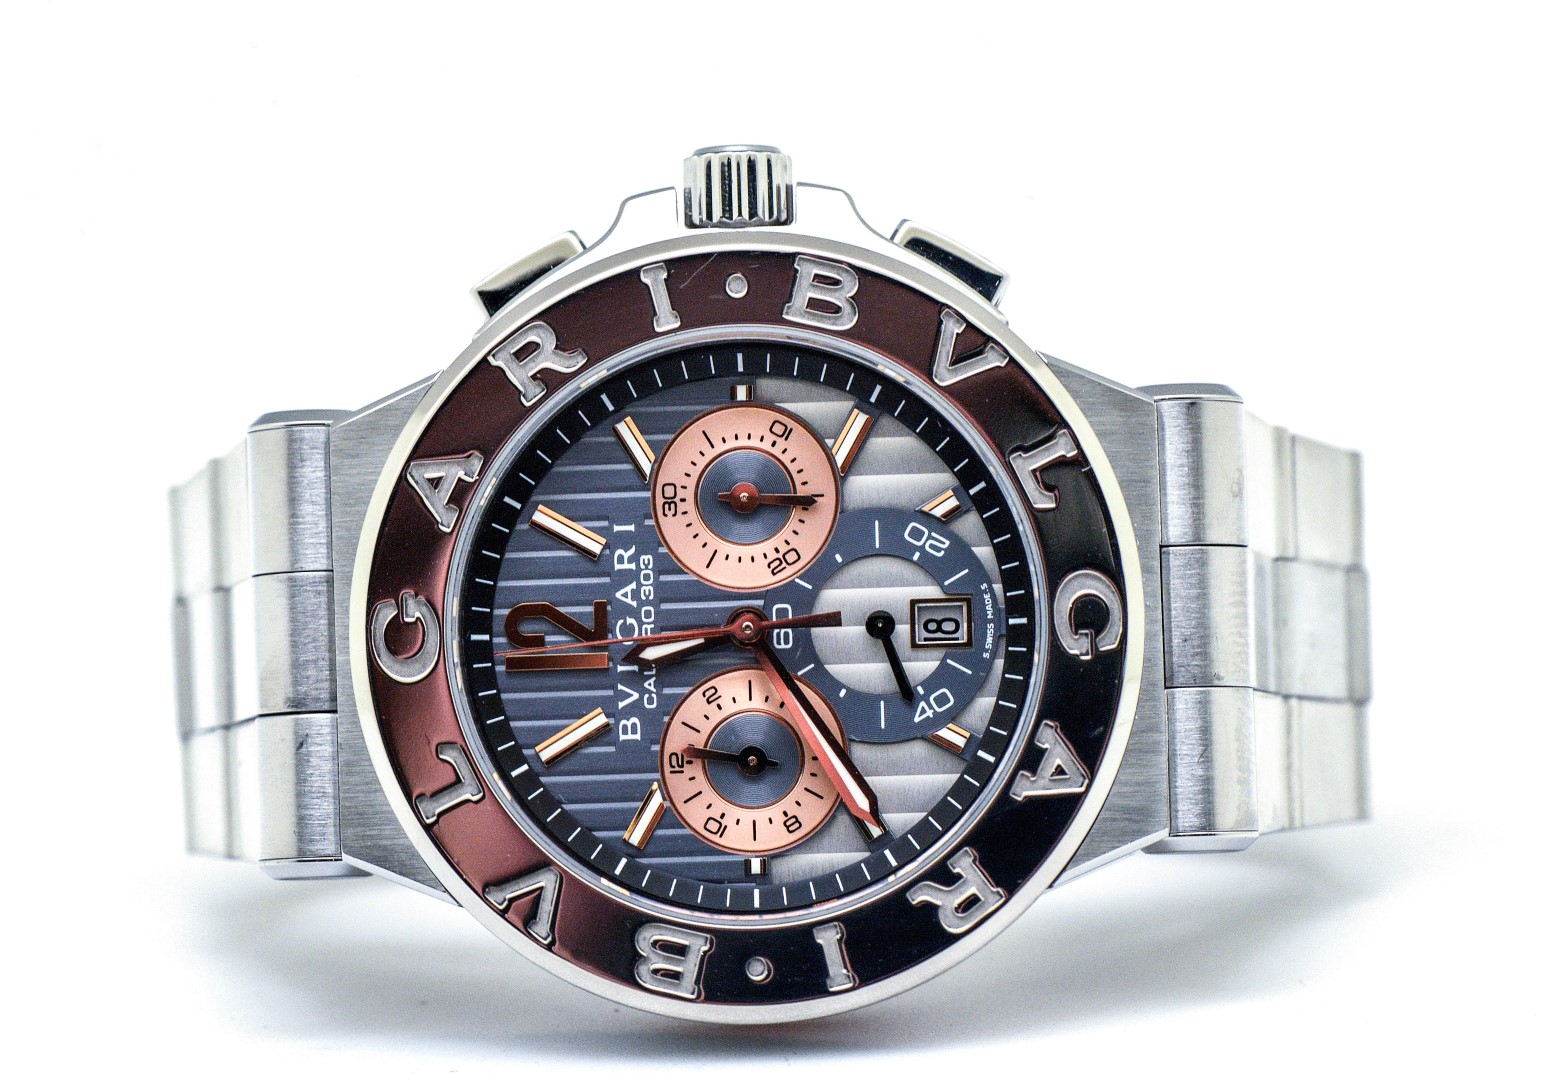 bvlgari watches calibro 303 price